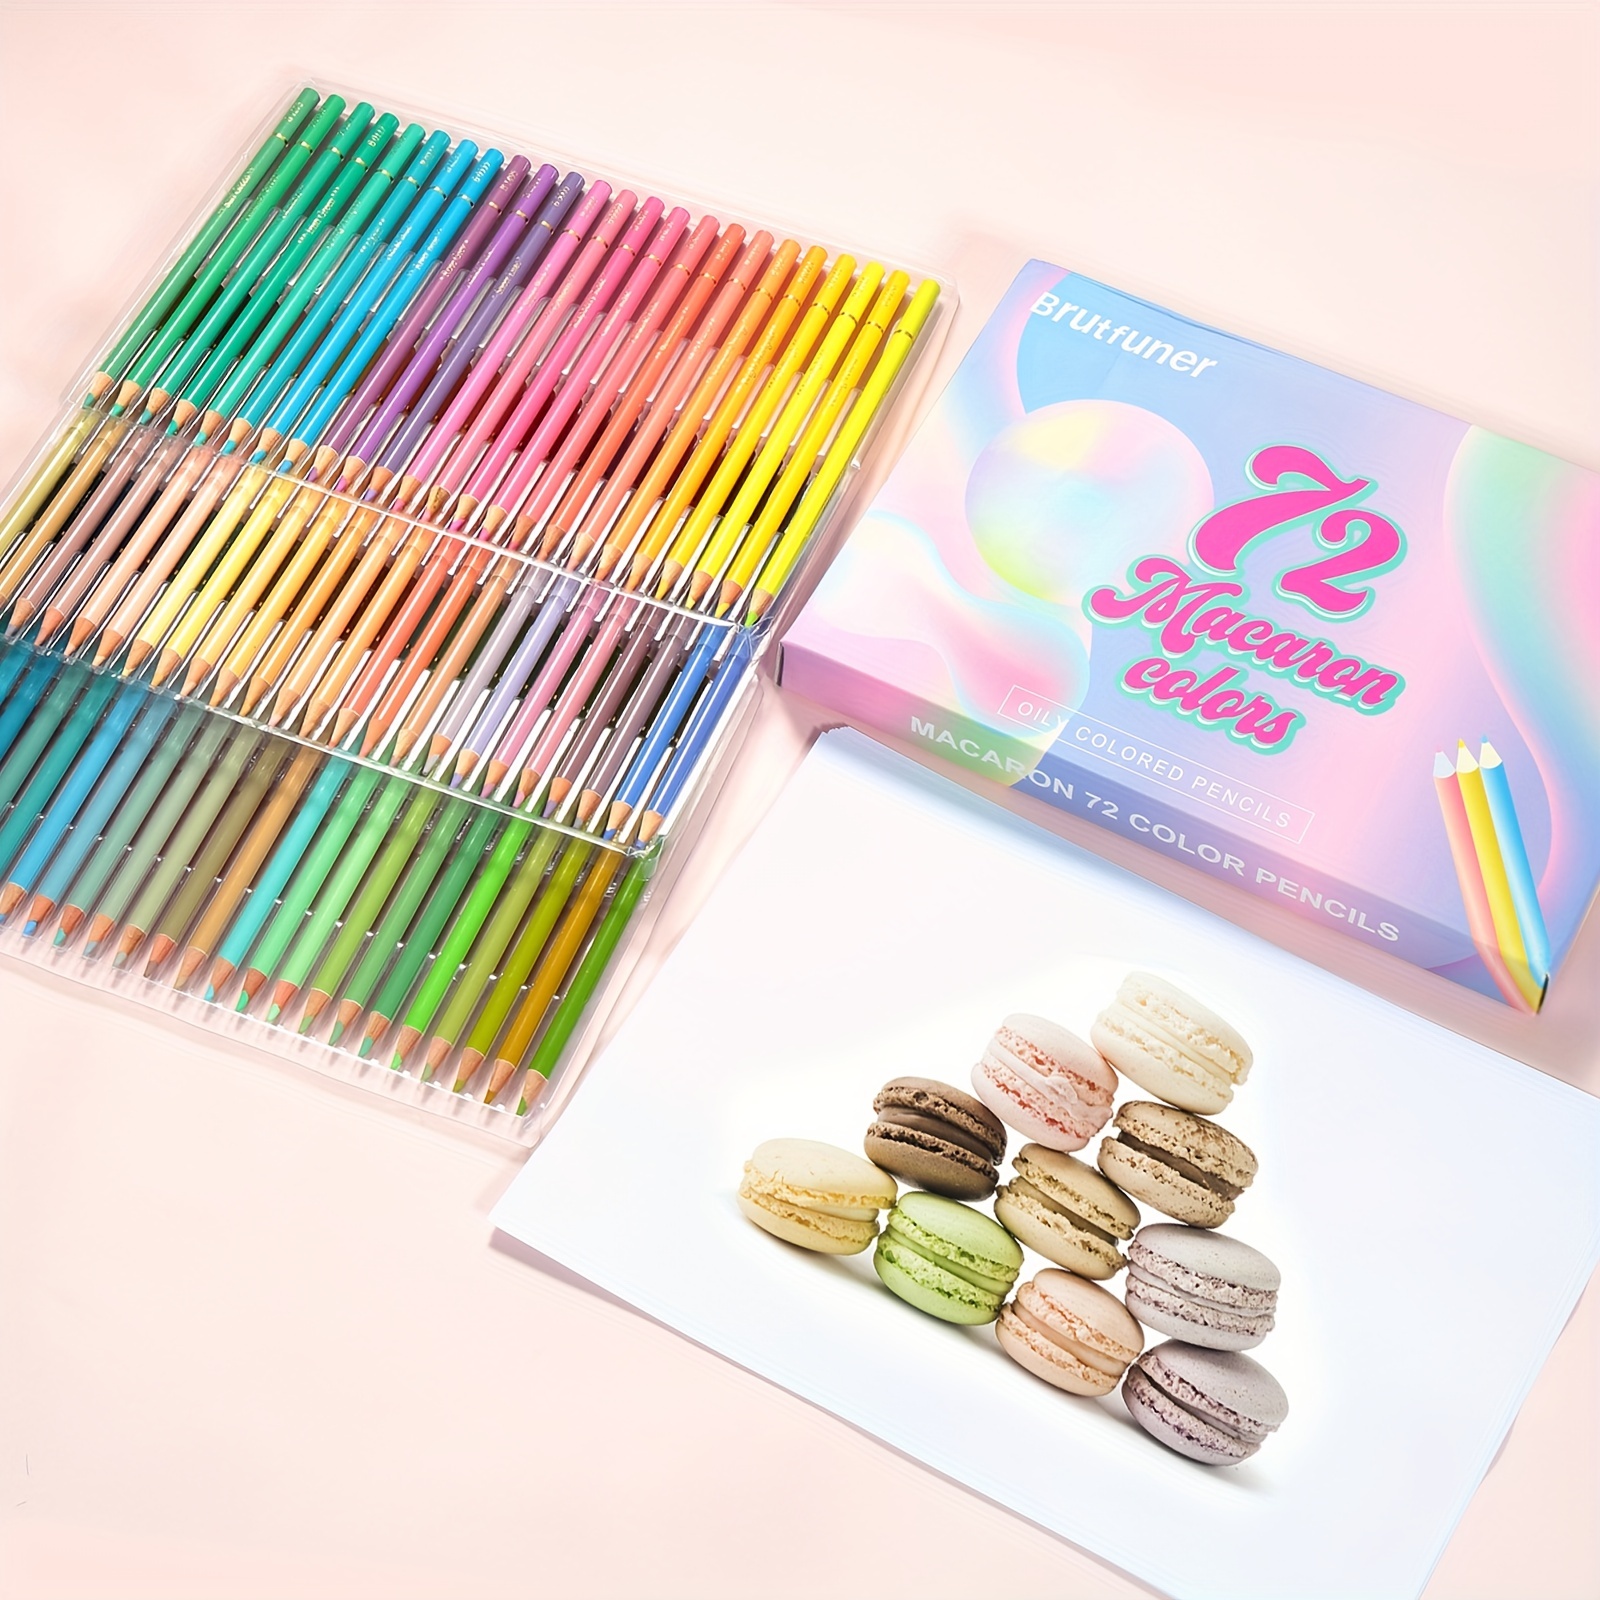 24pcs Macaron Colors Pencils Set, Oil Based Pastel Neon Colored Pencils